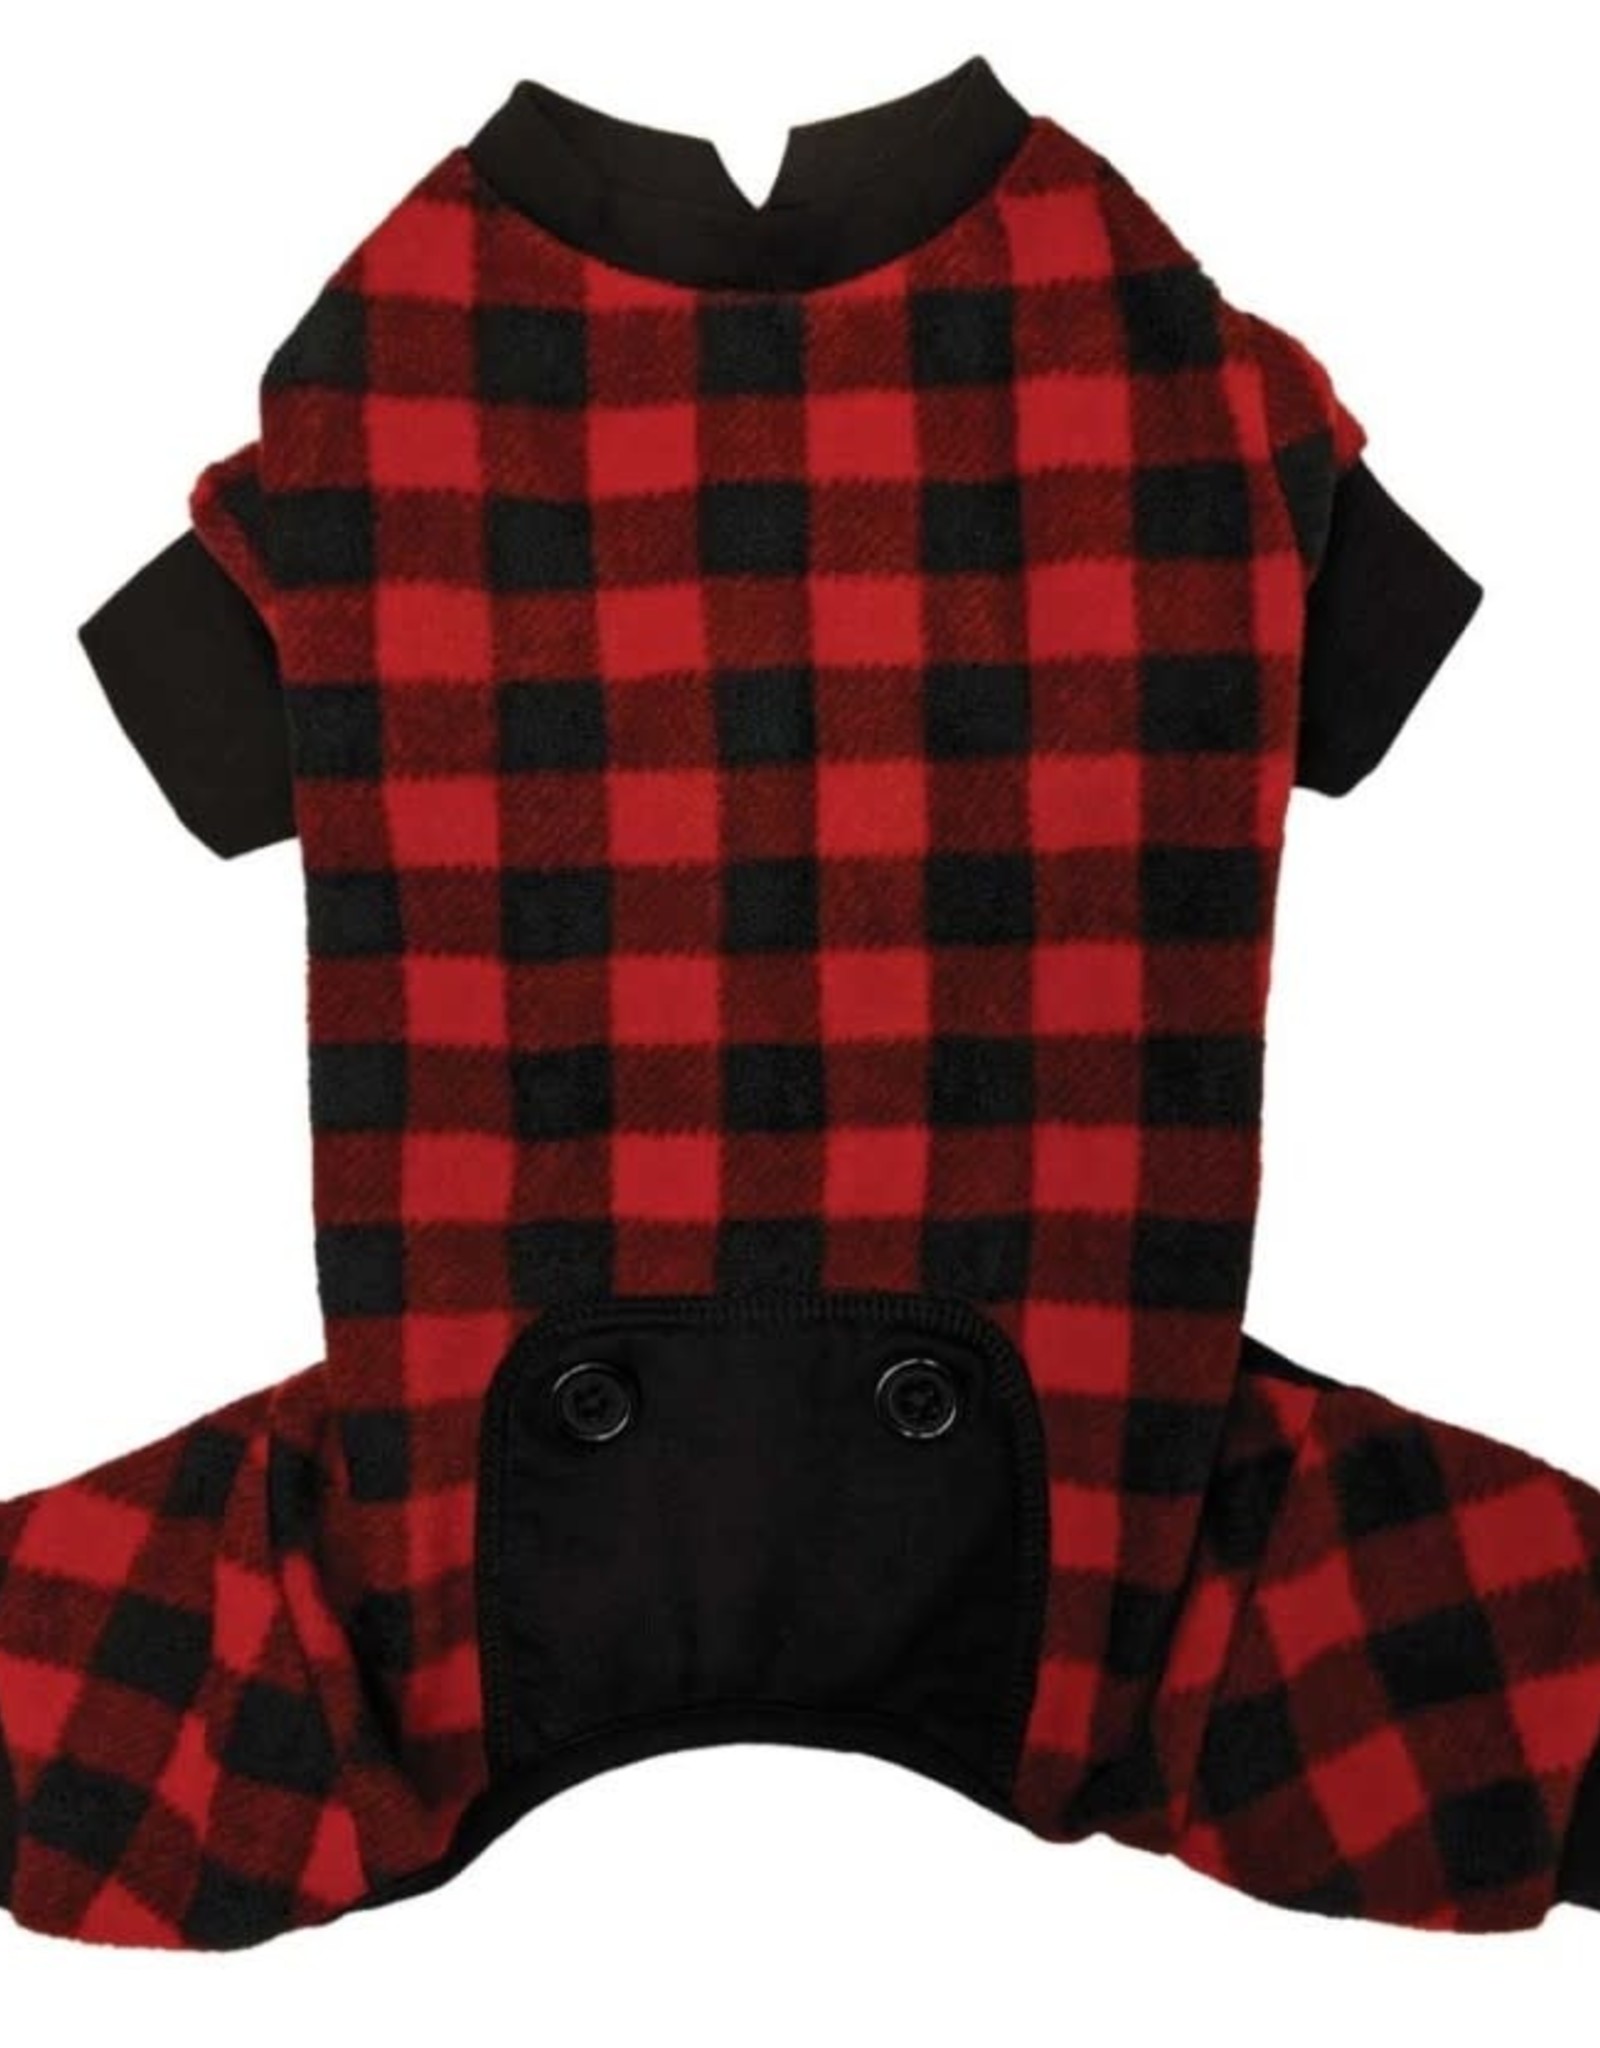 FASHION PET (ETHICAL) FAS Buffalo Plaid Pajamas Red Small